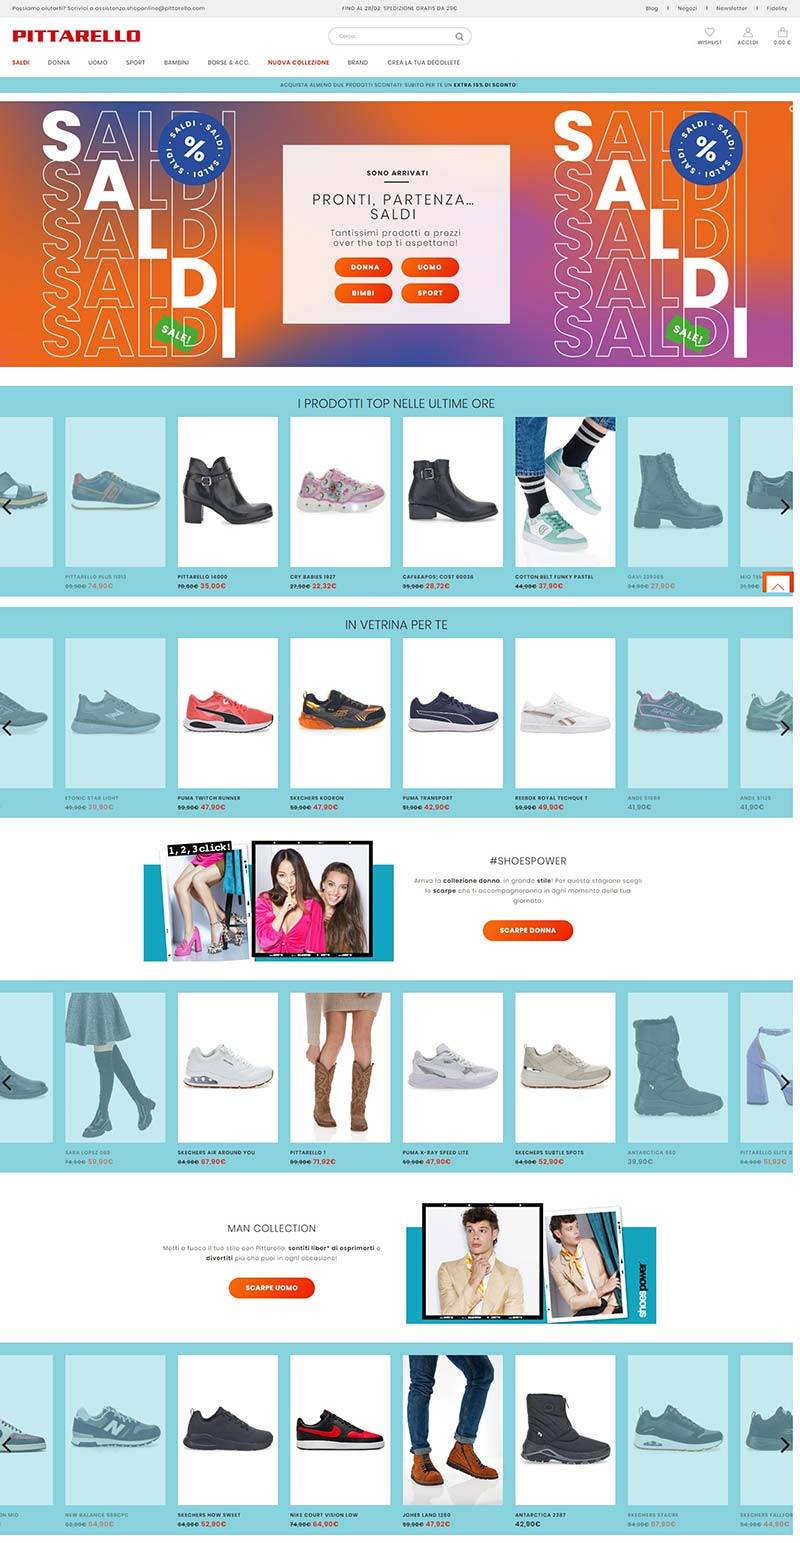 Pittarello 意大利鞋履配饰品牌购物网站